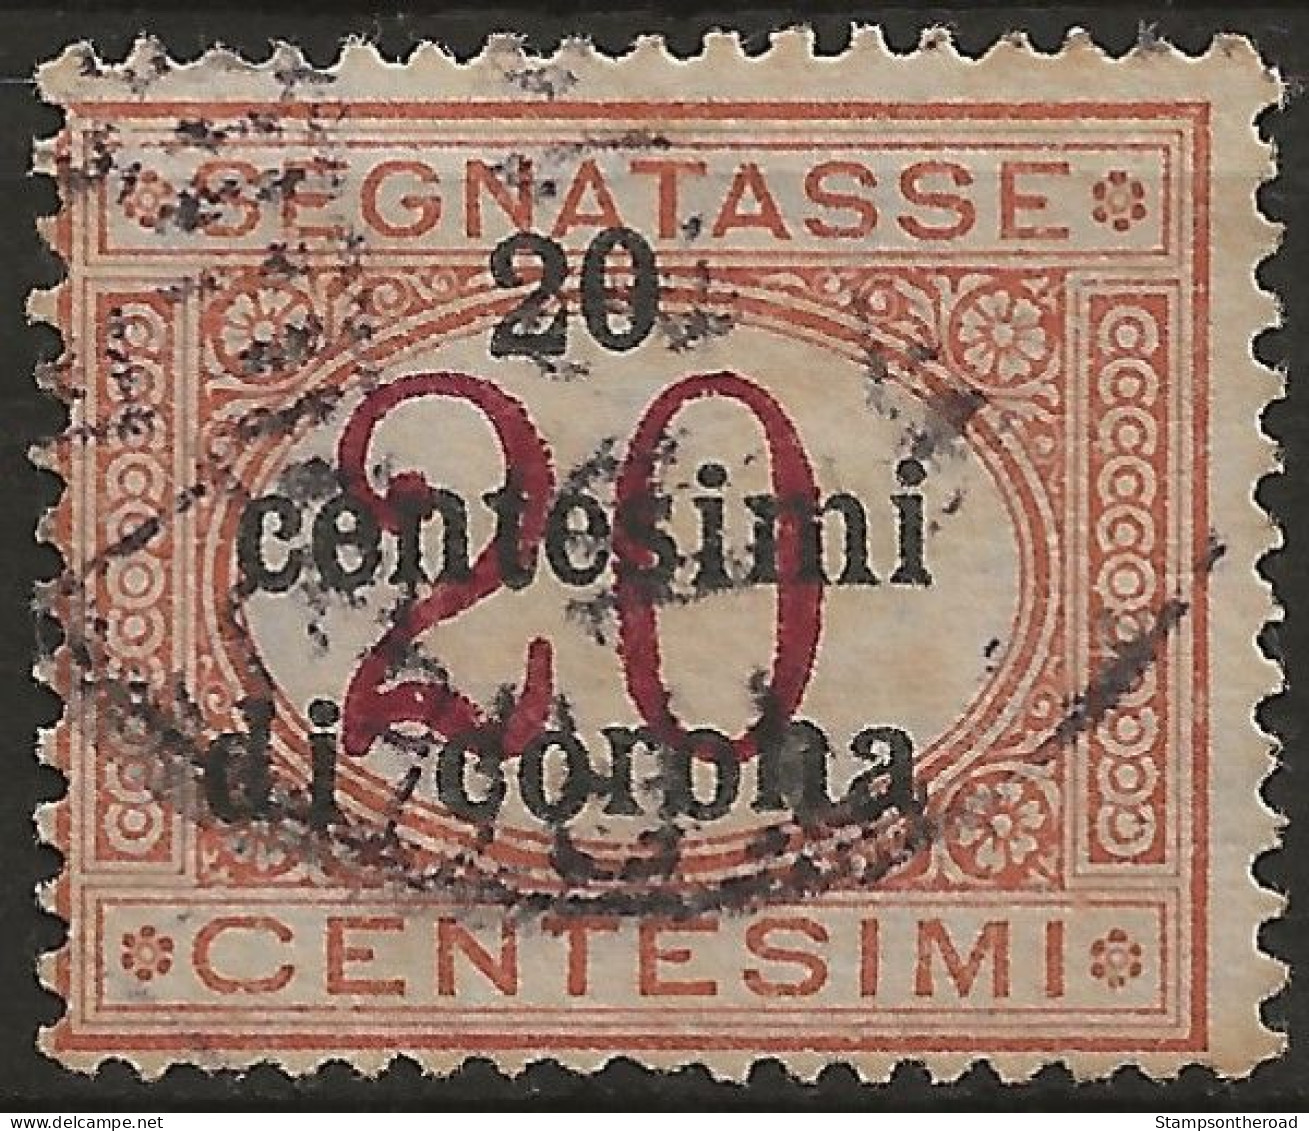 TRTTSx3U6,1919 Terre Redente - Trento E Trieste, Sassone Nr. 3, Segnatasse Usato Per Posta °/ - Trentino & Triest